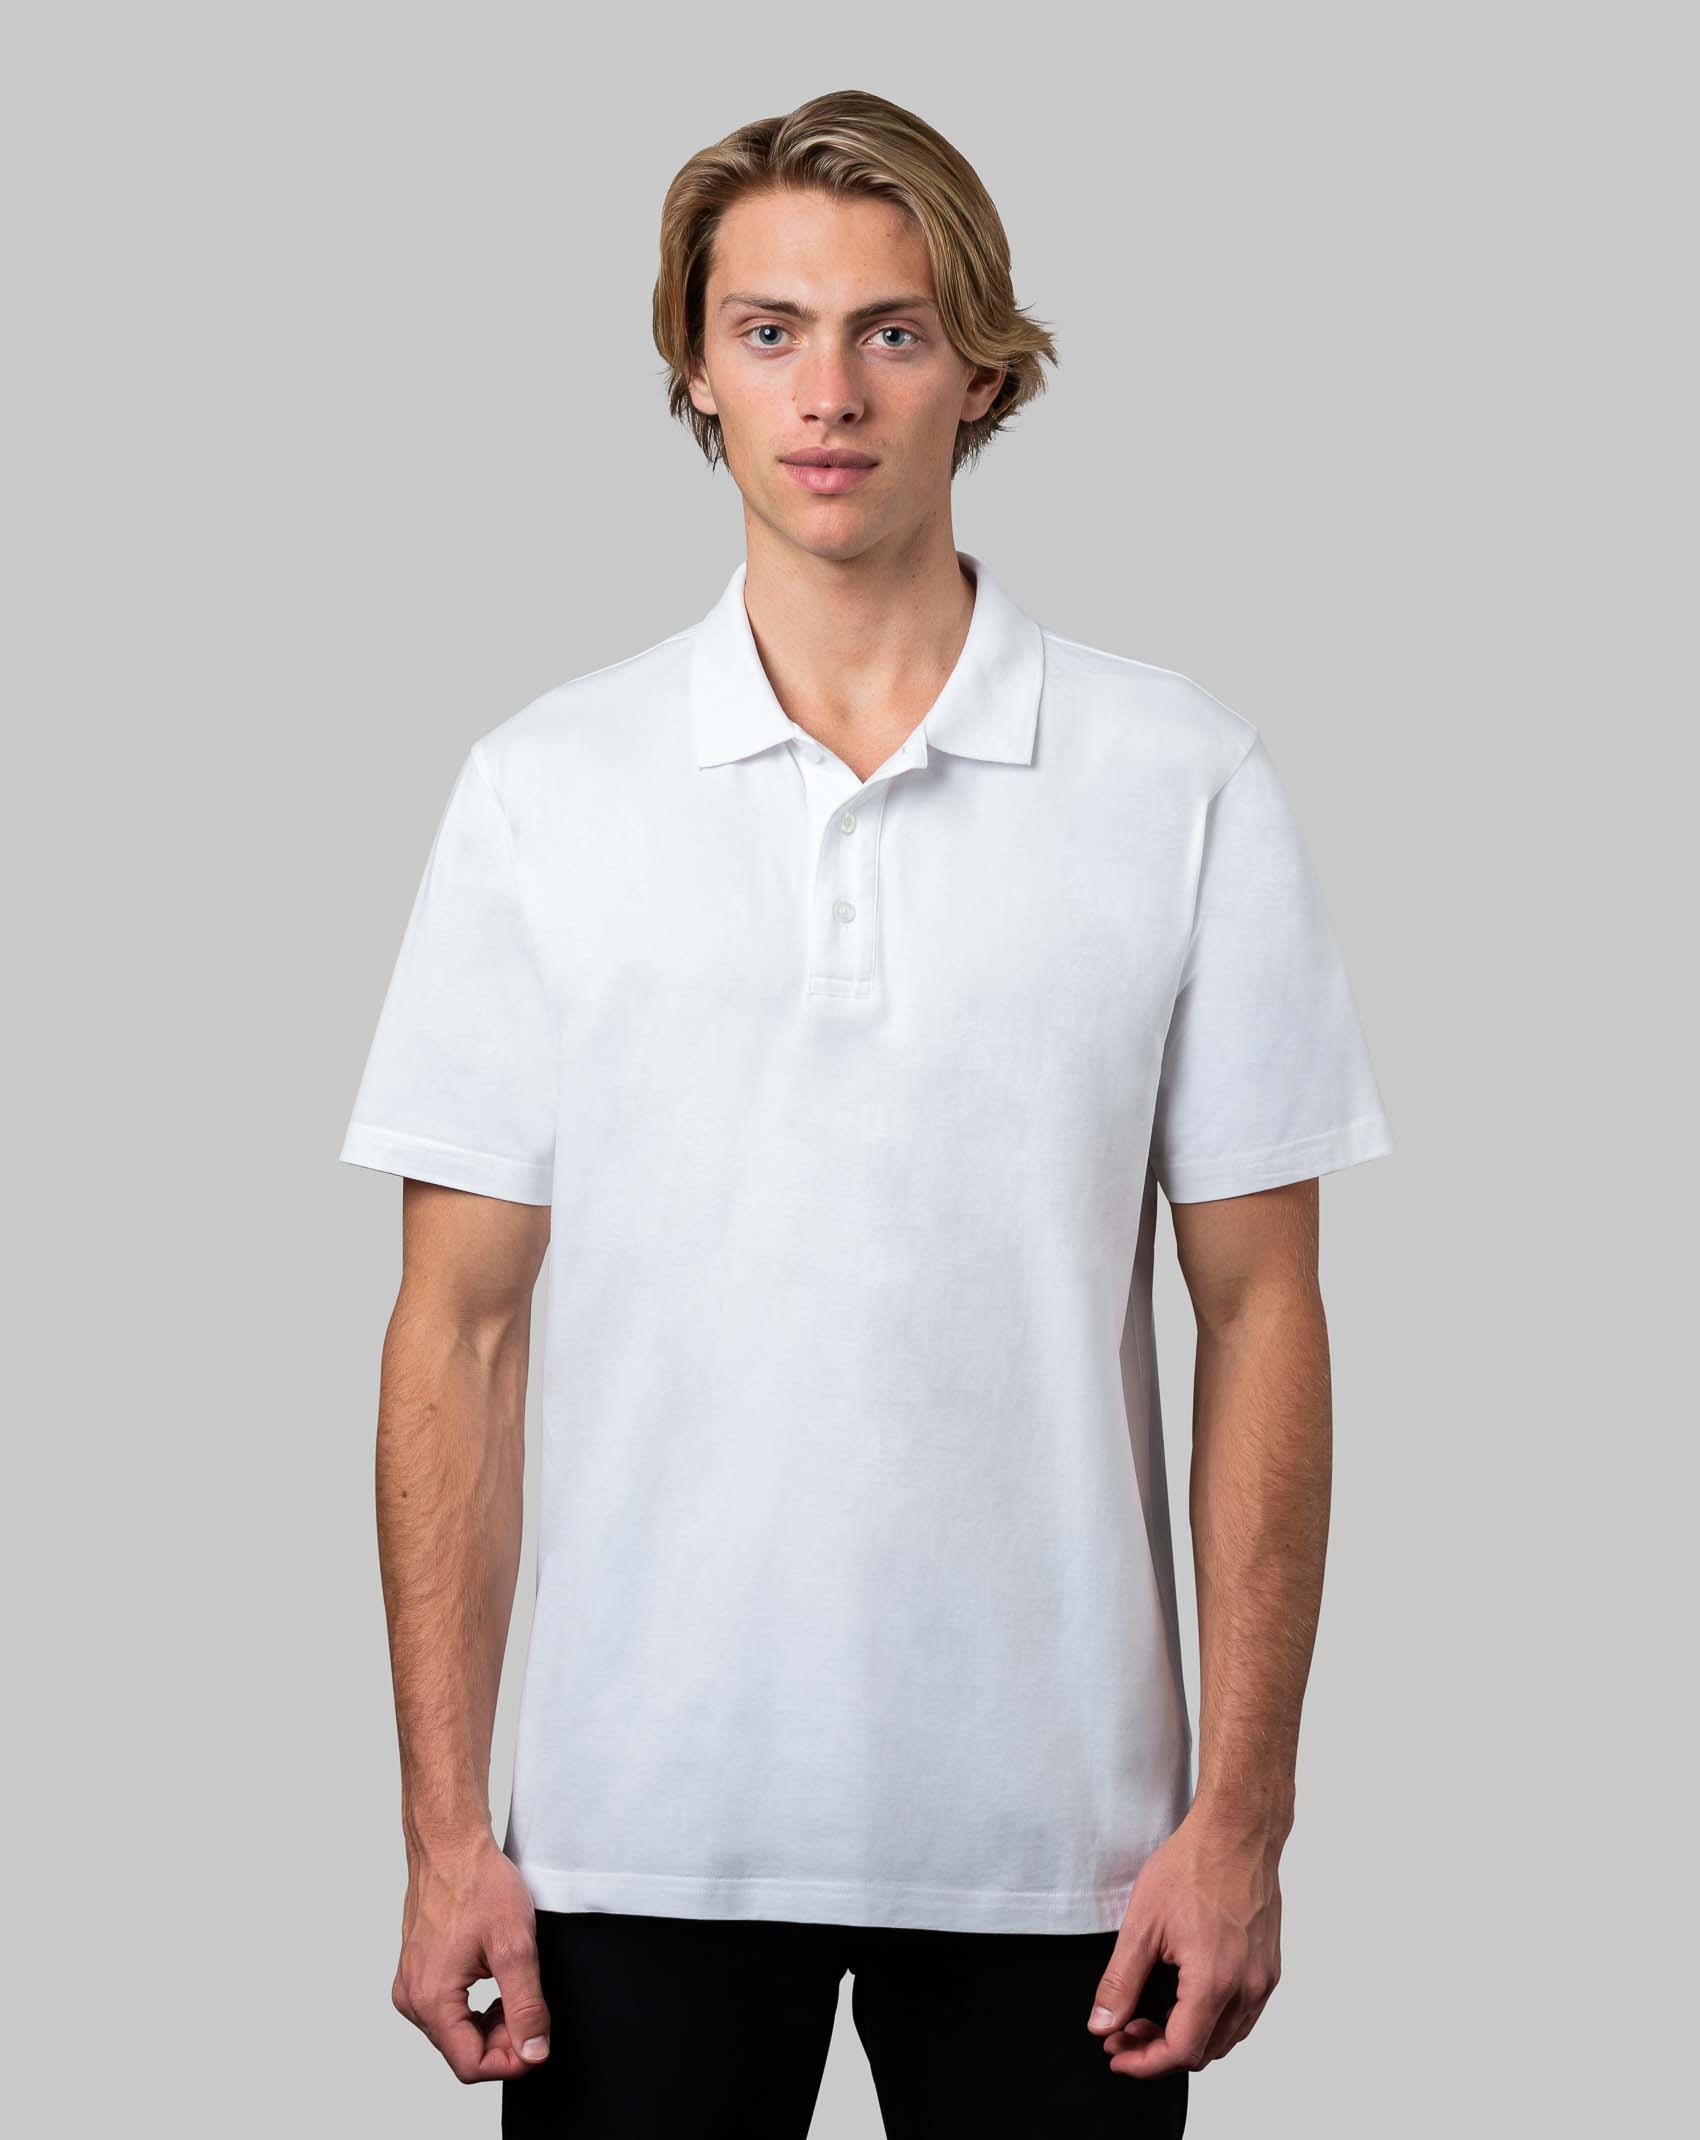 CB Fashion Mens Polo Shirt